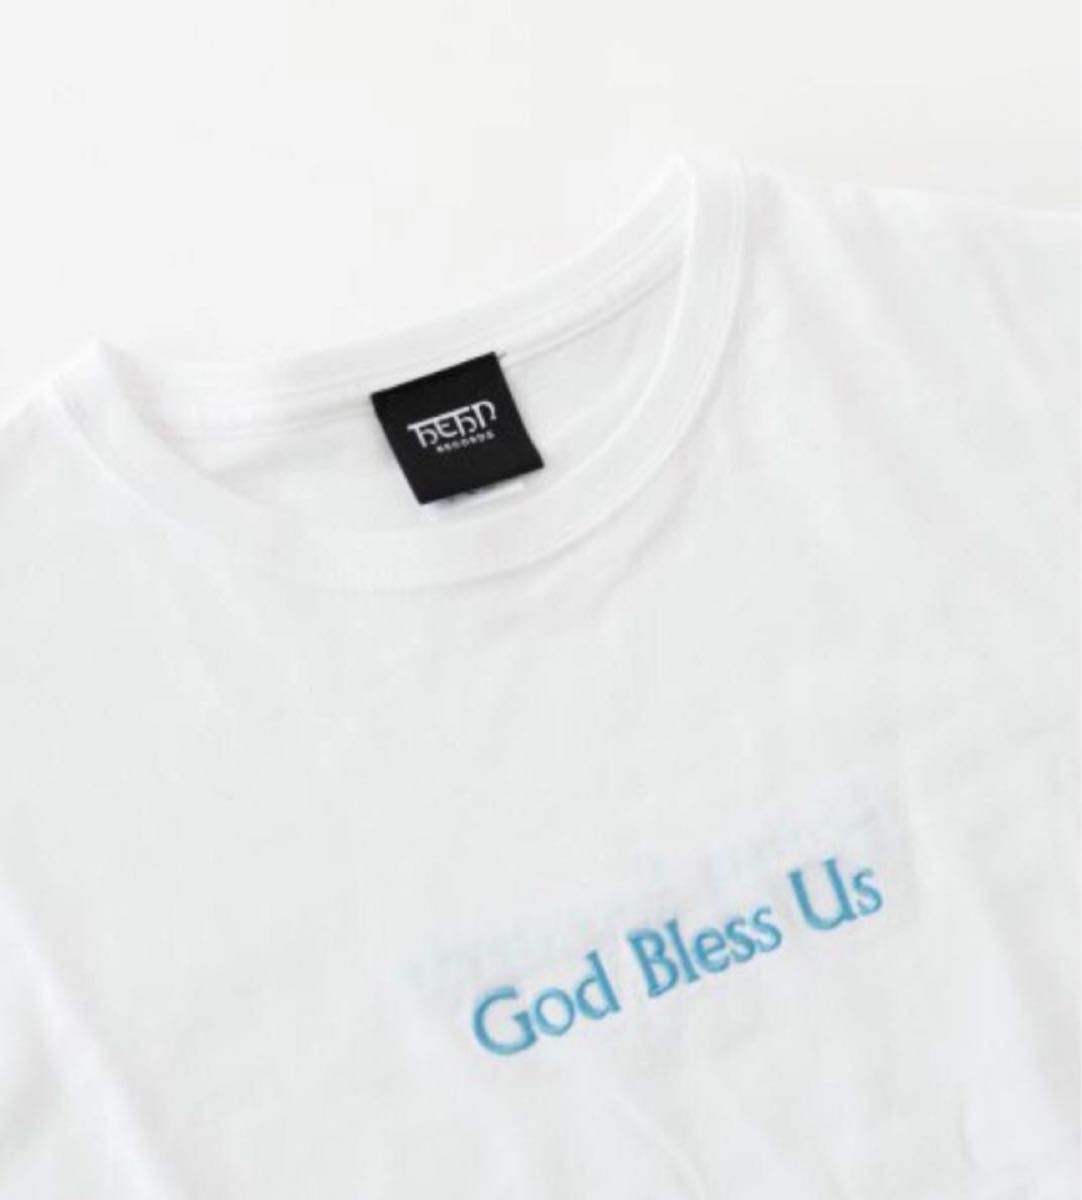 藤井風 God Bless Us Tシャツ XL